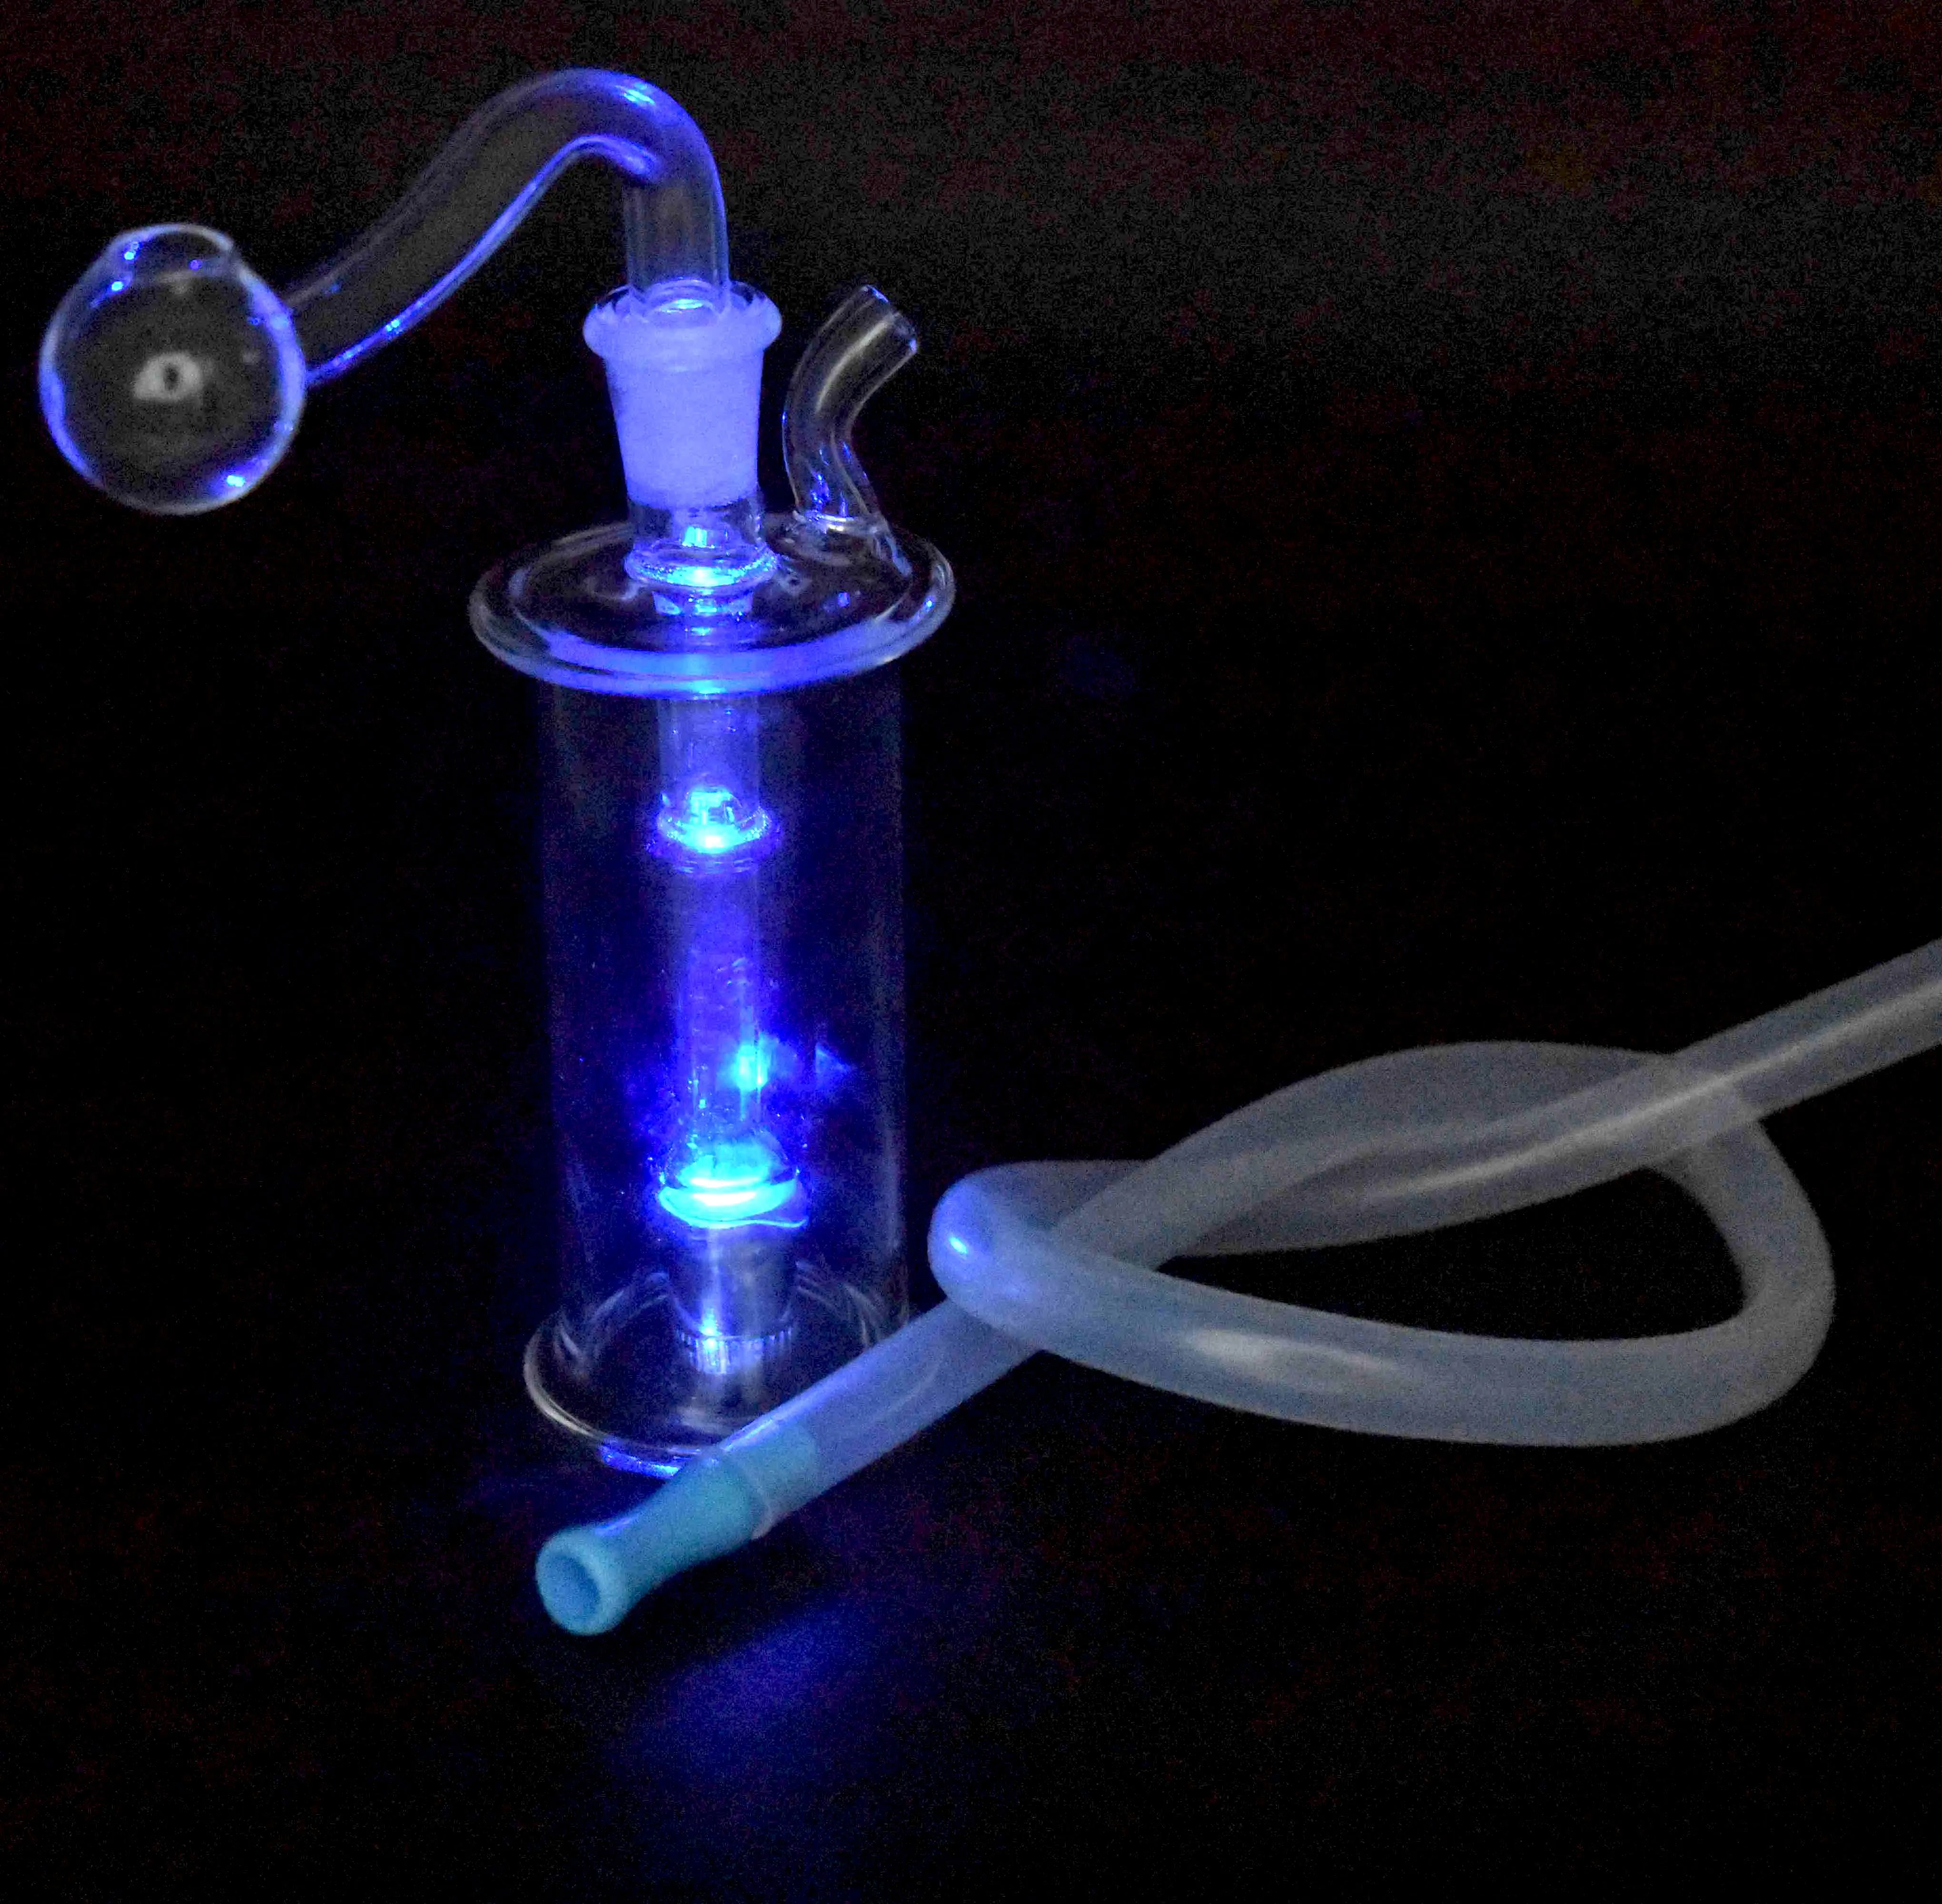 Nuovo LED Glass Oil Burner Bong Water Pipes Piccolo Bubbler Bong MiNi Oil Dab Rigs per fumare narghilè con tubo e tubo flessibile per bruciatore a nafta in vetro da 10 mm